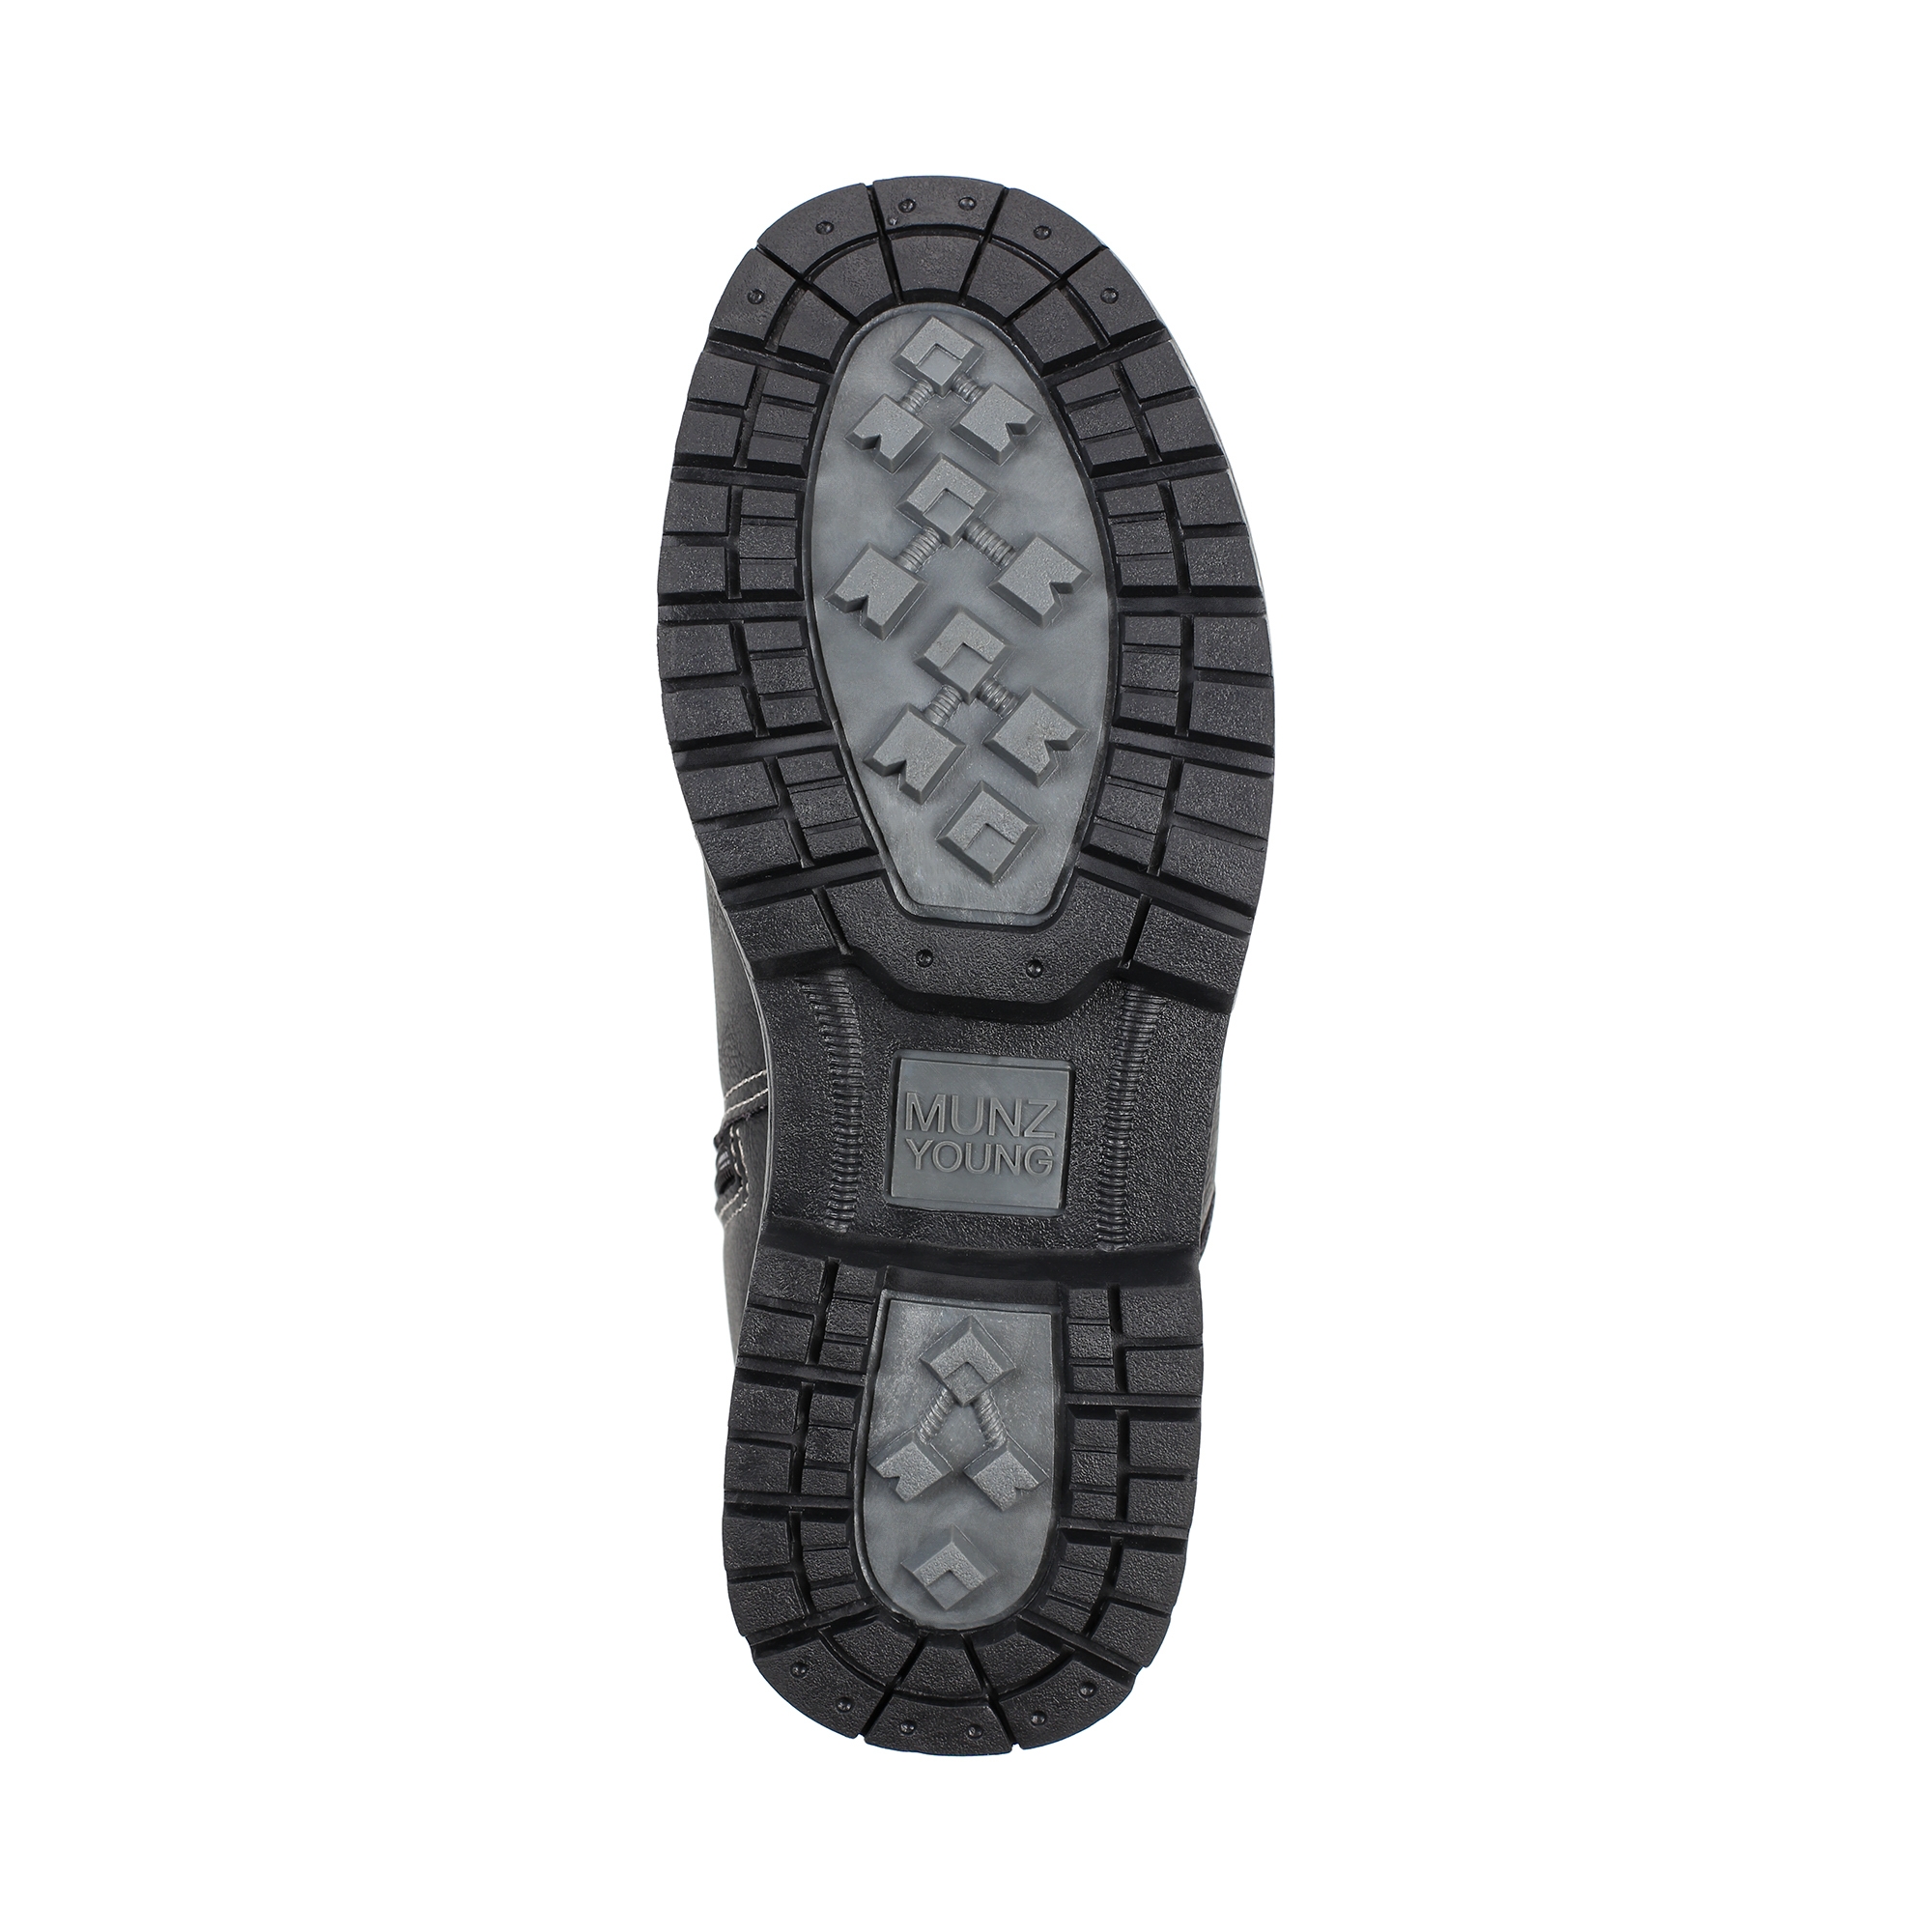 Обувь для мальчиков MUNZ YOUNG 018-033B-5602, цвет черный, размер 35 - фото 4